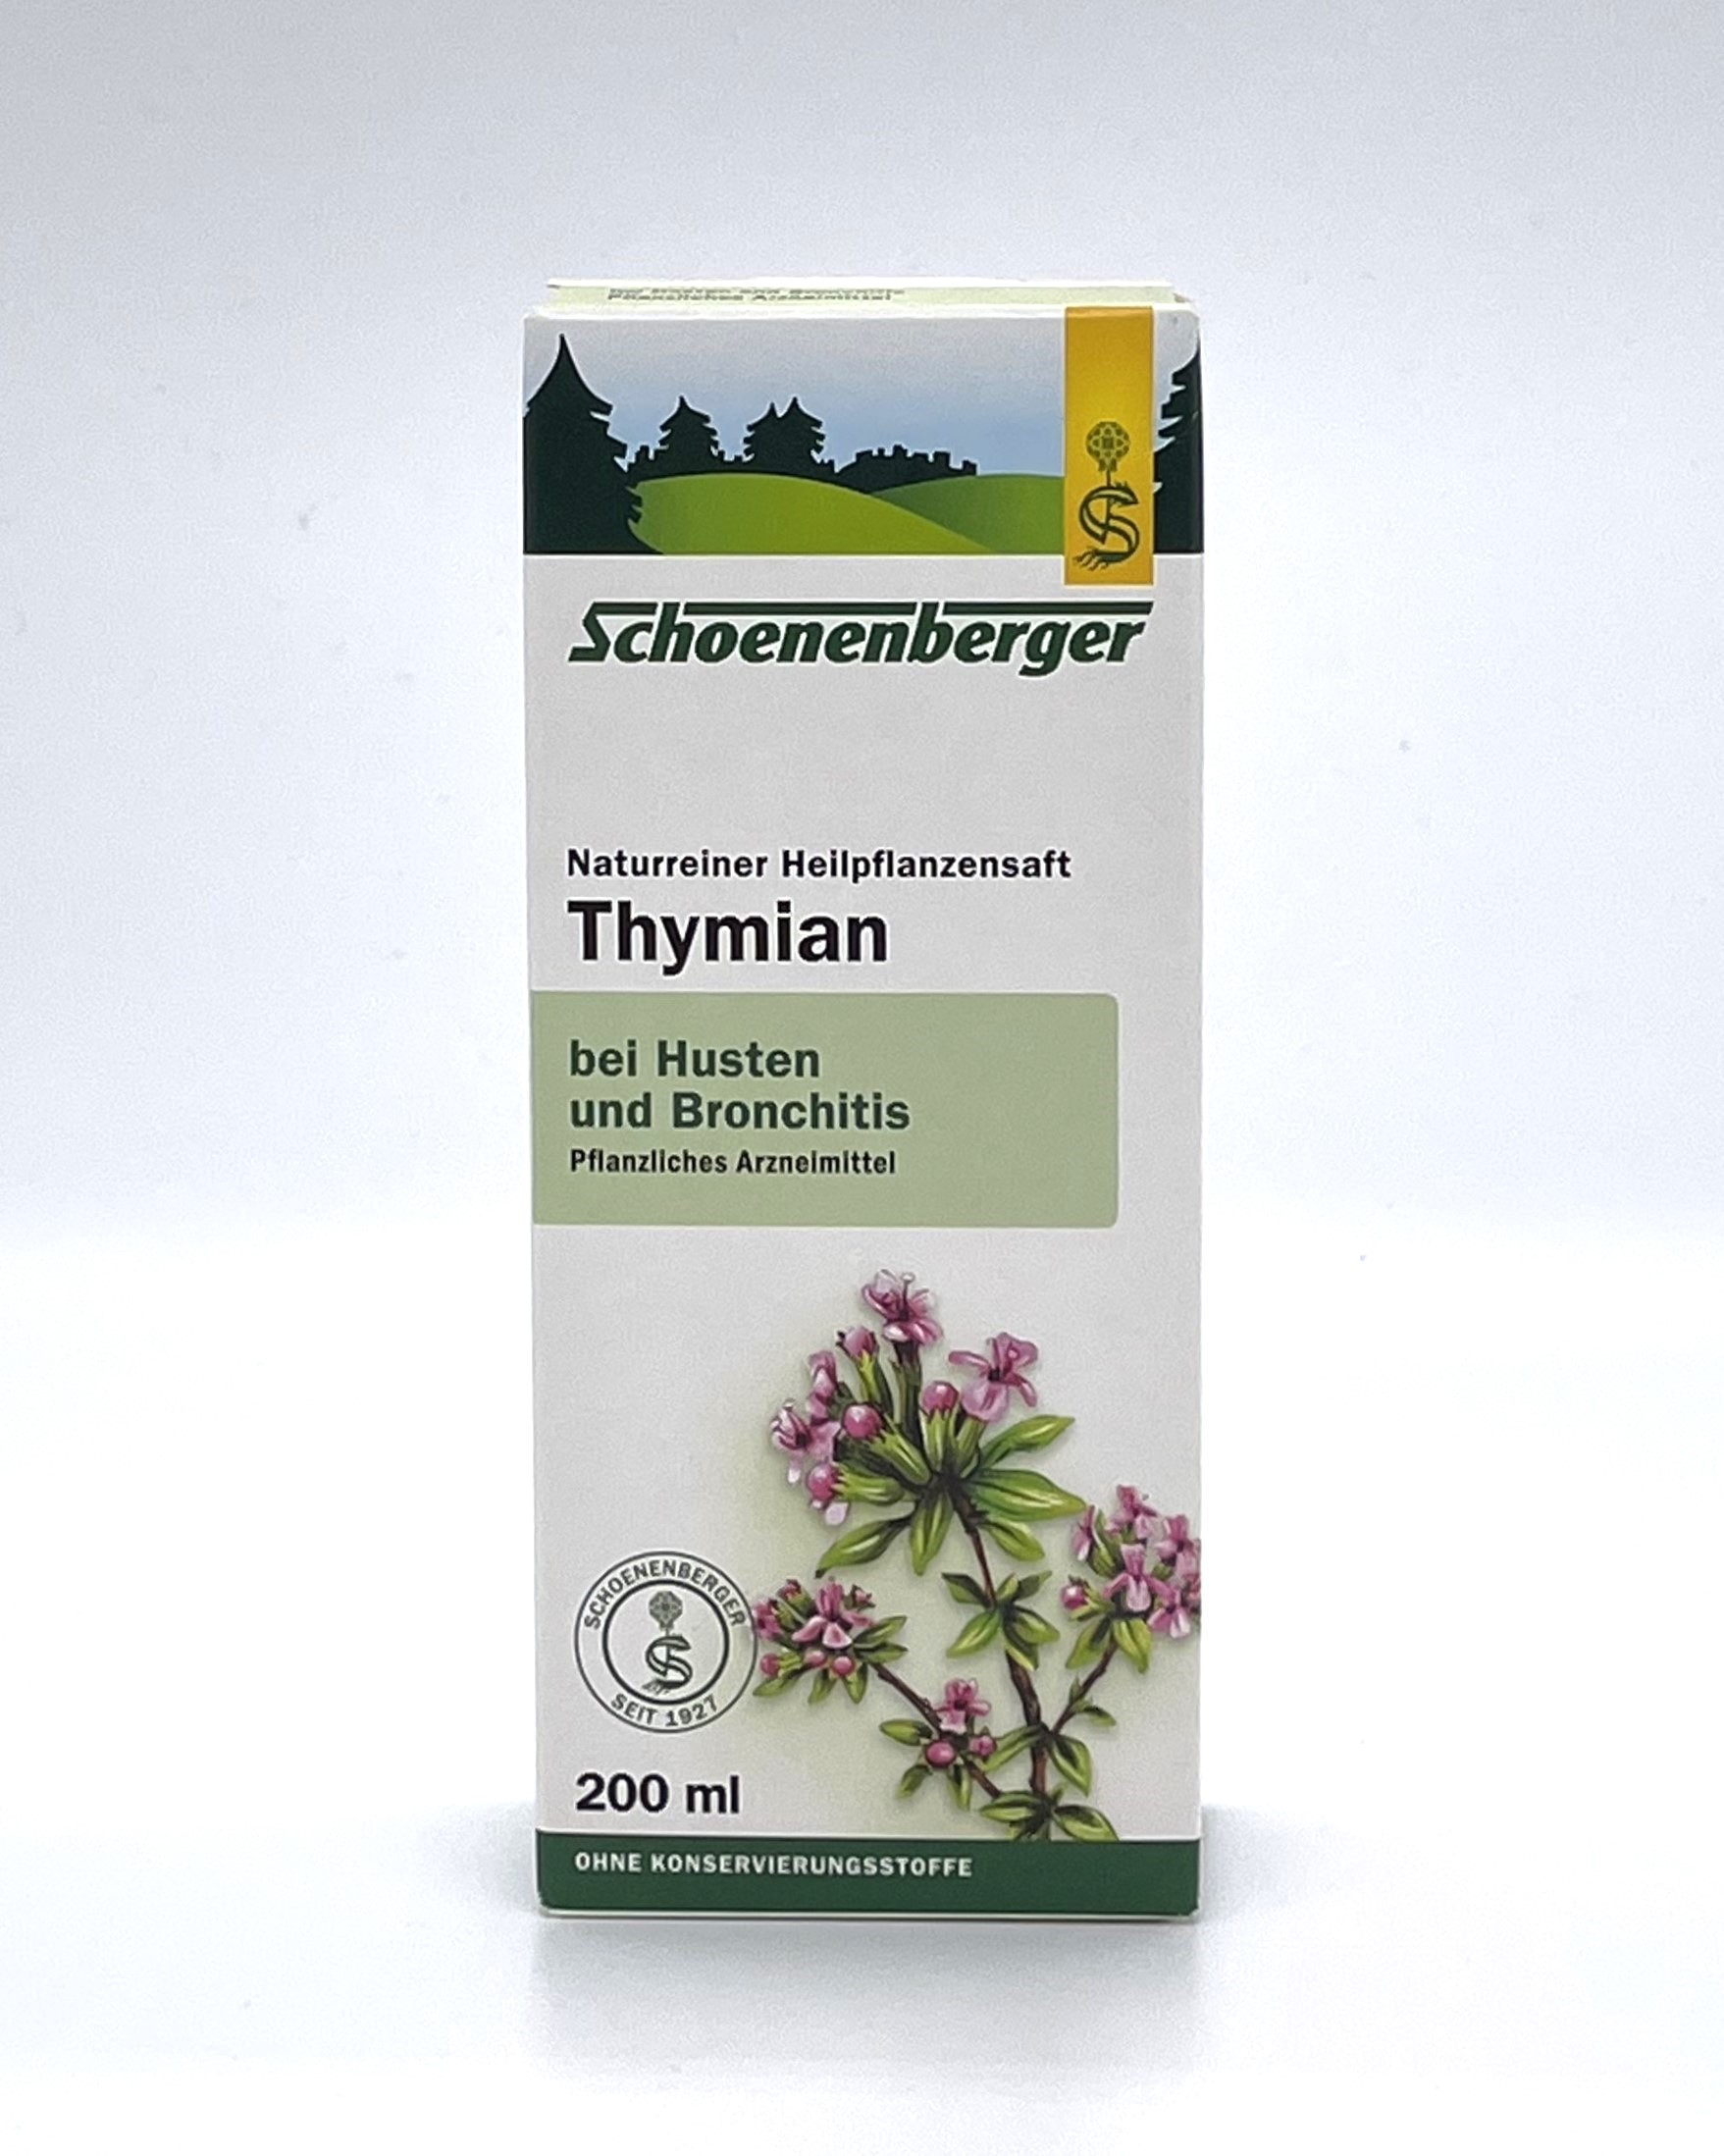 Schoenenberger Thymian Naturreiner Heilpflanzensaft   